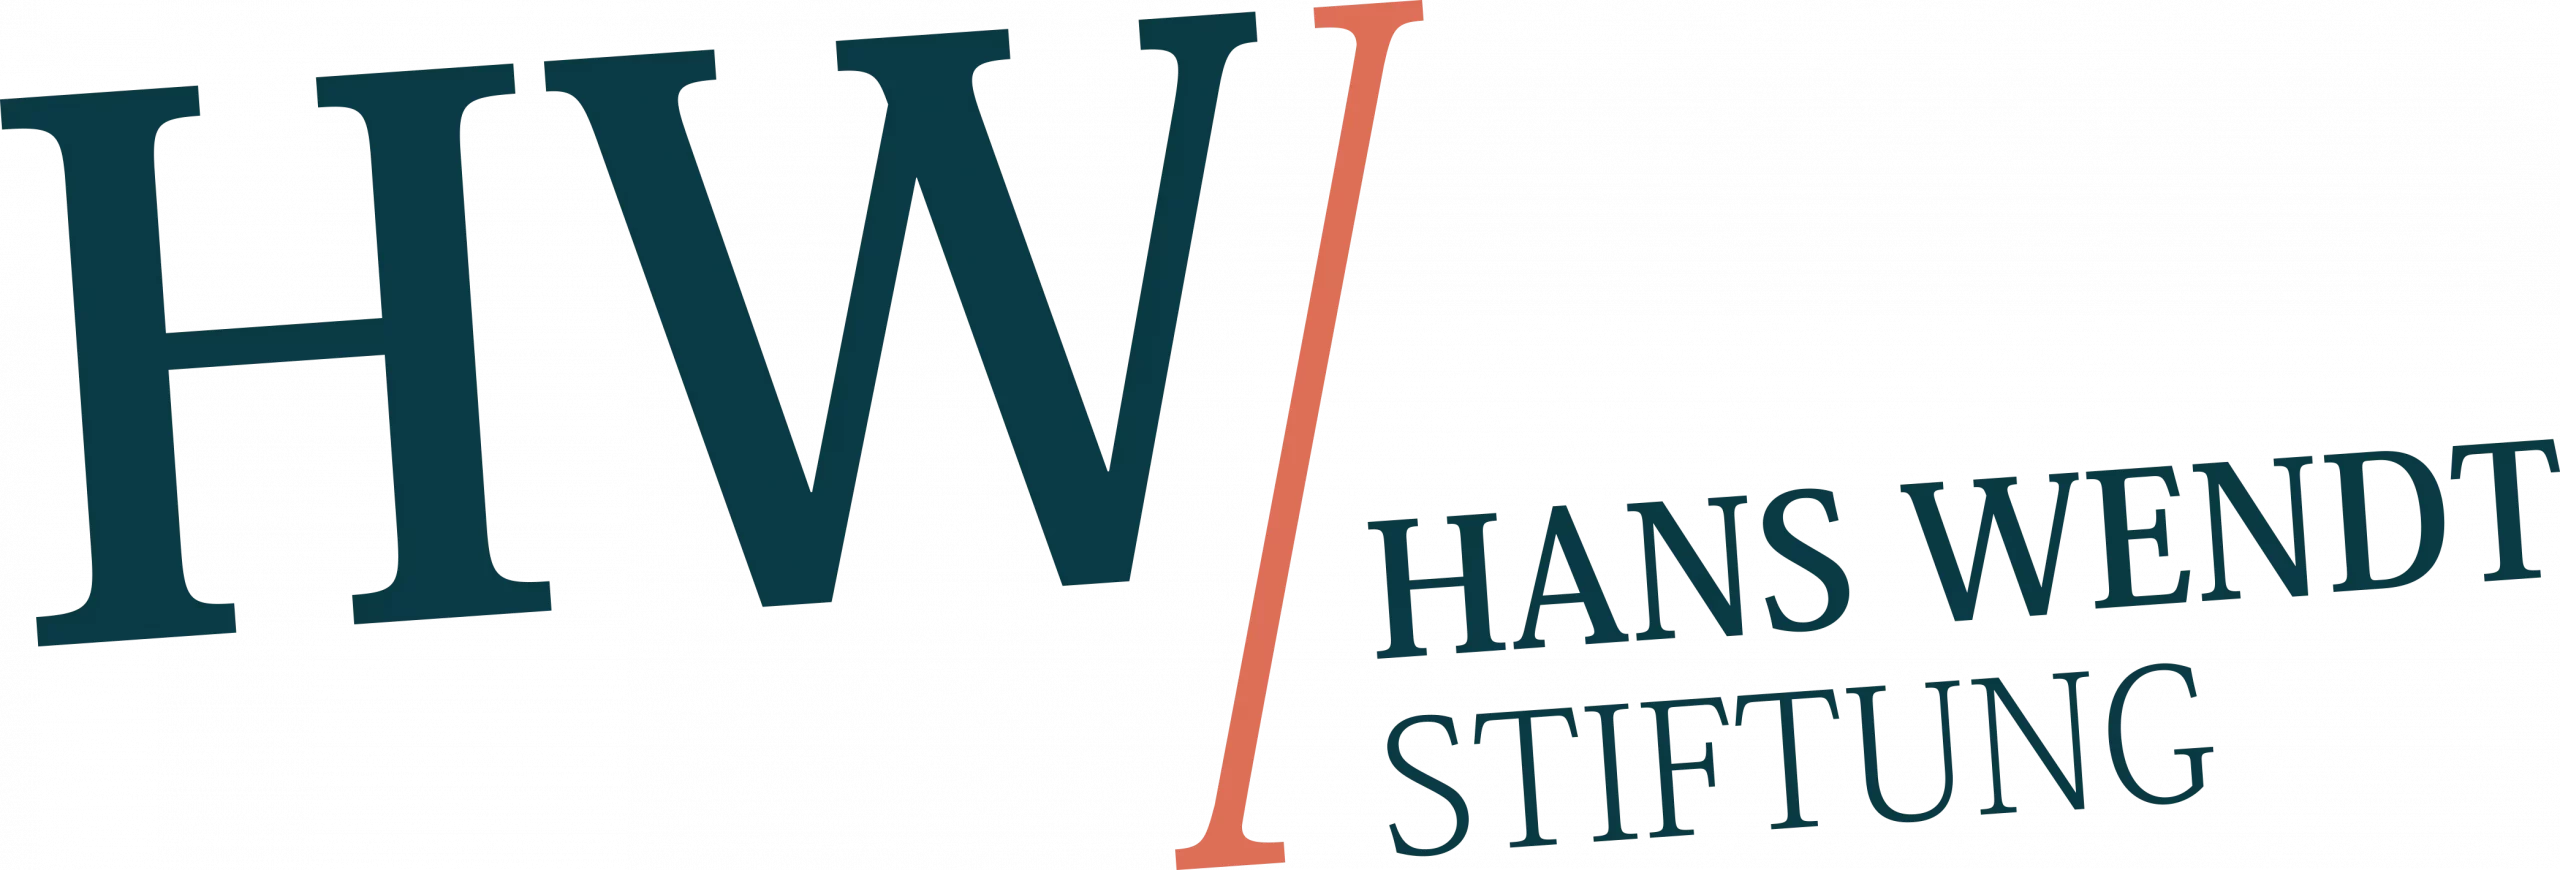 Hans-Wendt-Stiftung